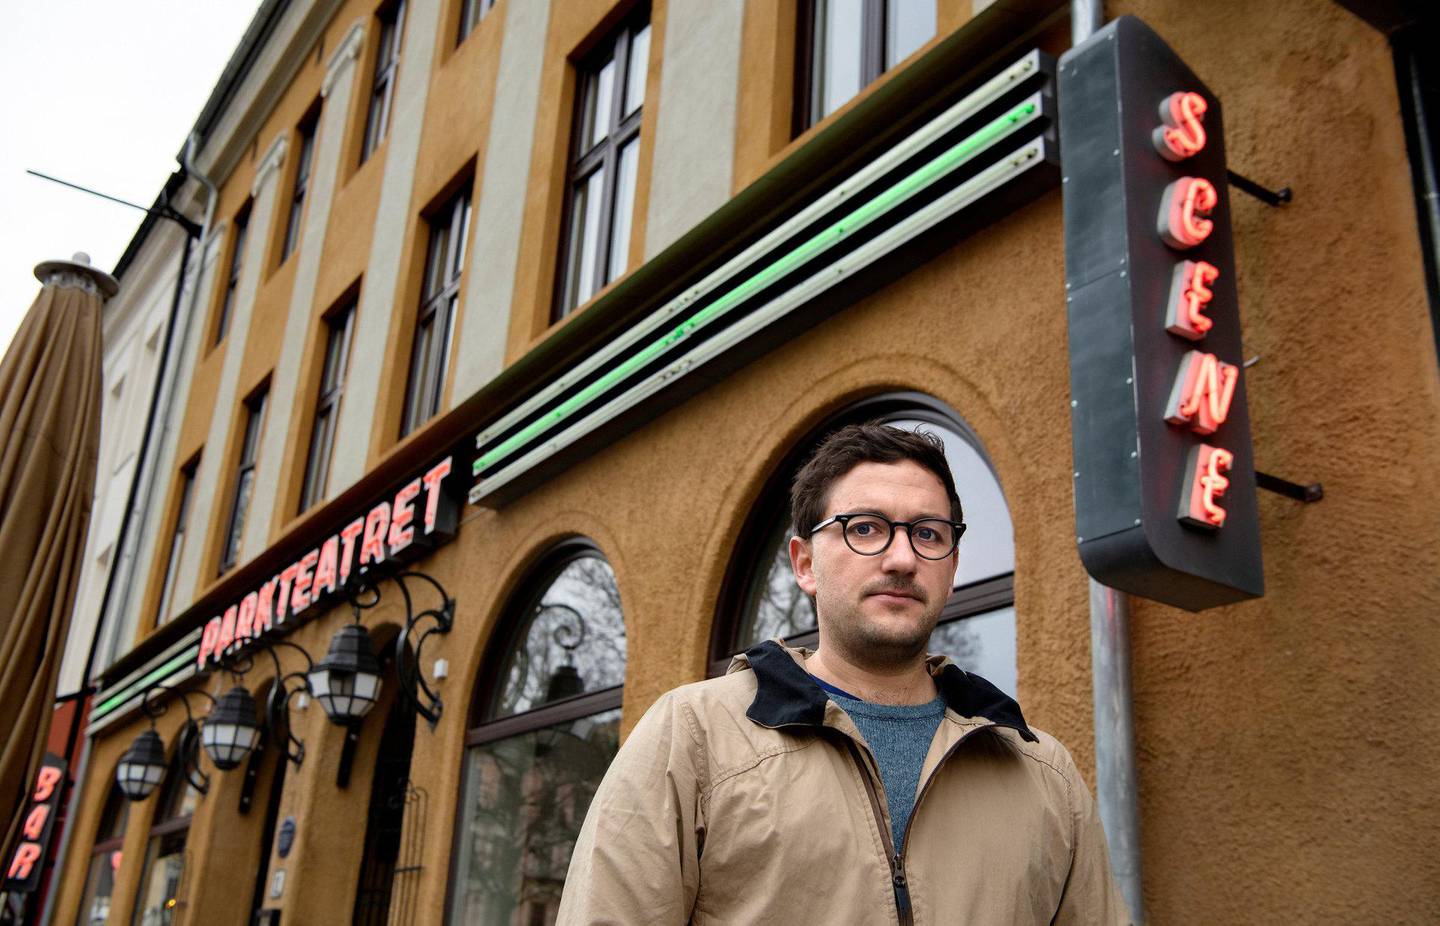 Dan-Michael Danino, daglig leder for Parkteatret på Grünerløkka i Oslo, har sendt ut permitteringsvarsel som følge av koronakrisen. Foto: Mimsy Møller